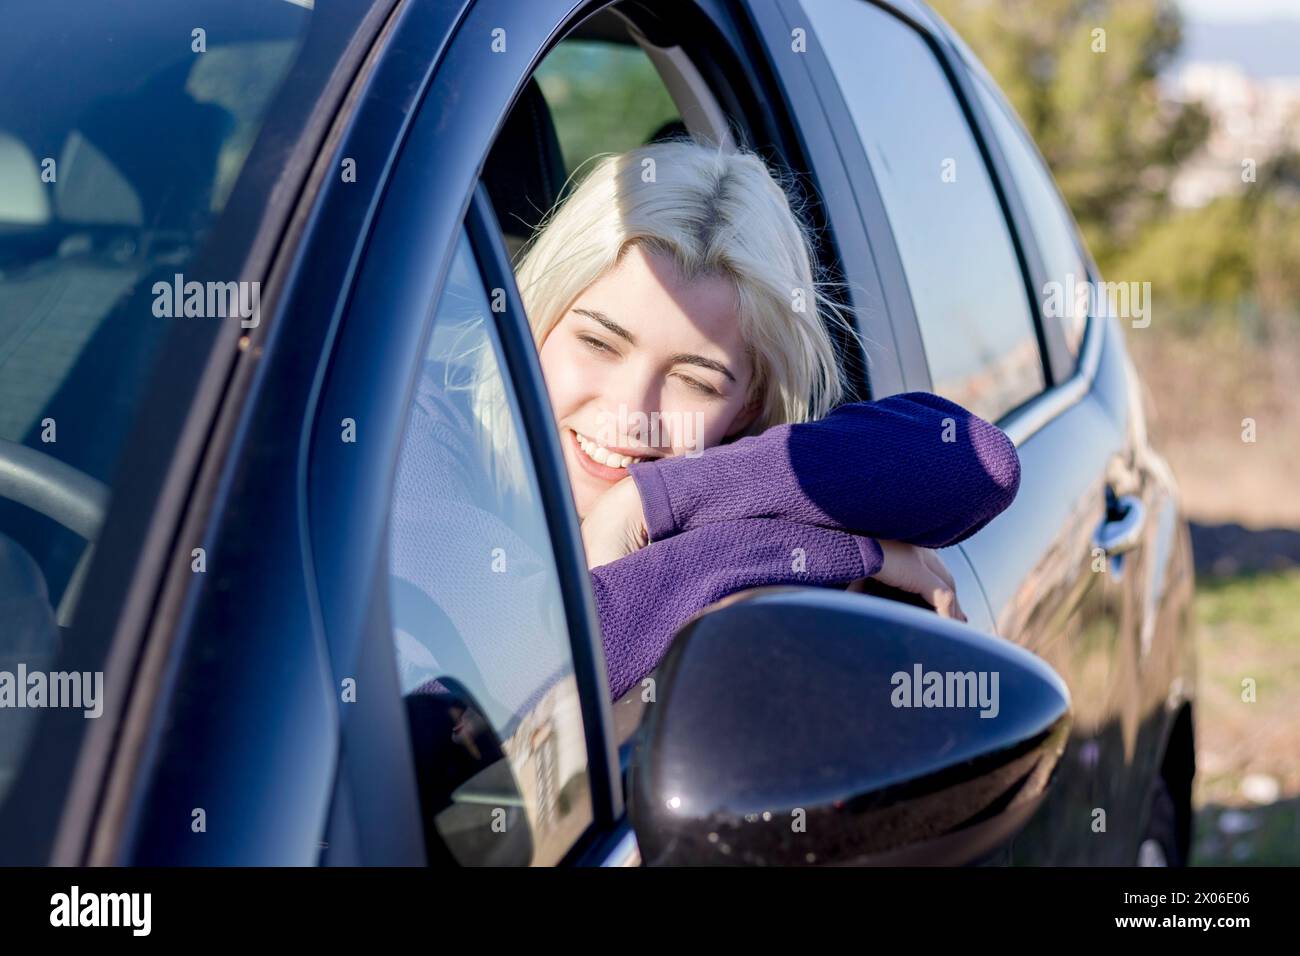 Blonde Frau, die Kopf auf dem Autofenster liegt, die Augen geschlossen, in einem Moment der Entspannung oder Müdigkeit, in einem lila Pullover, in einer ruhigen Atmosphäre Stockfoto